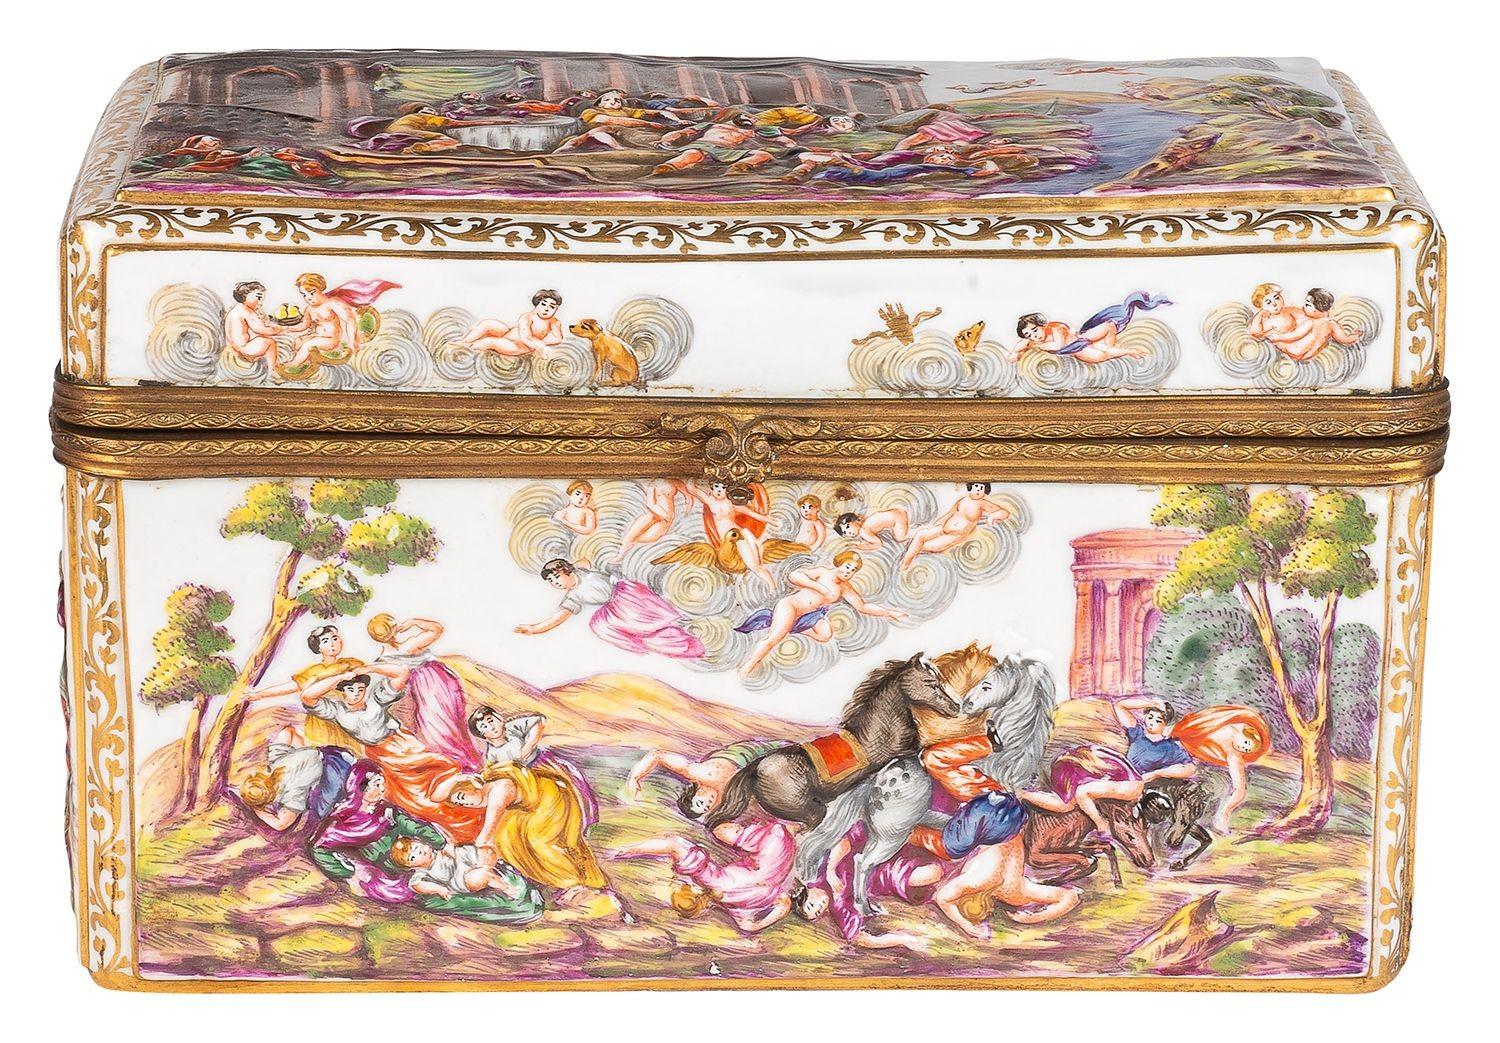 Très beau coffret en porcelaine de Capodimonte de la fin du XIXe siècle, représentant des scènes religieuses et célestes classiques.
Lot 74 G9811/22. SNYZ